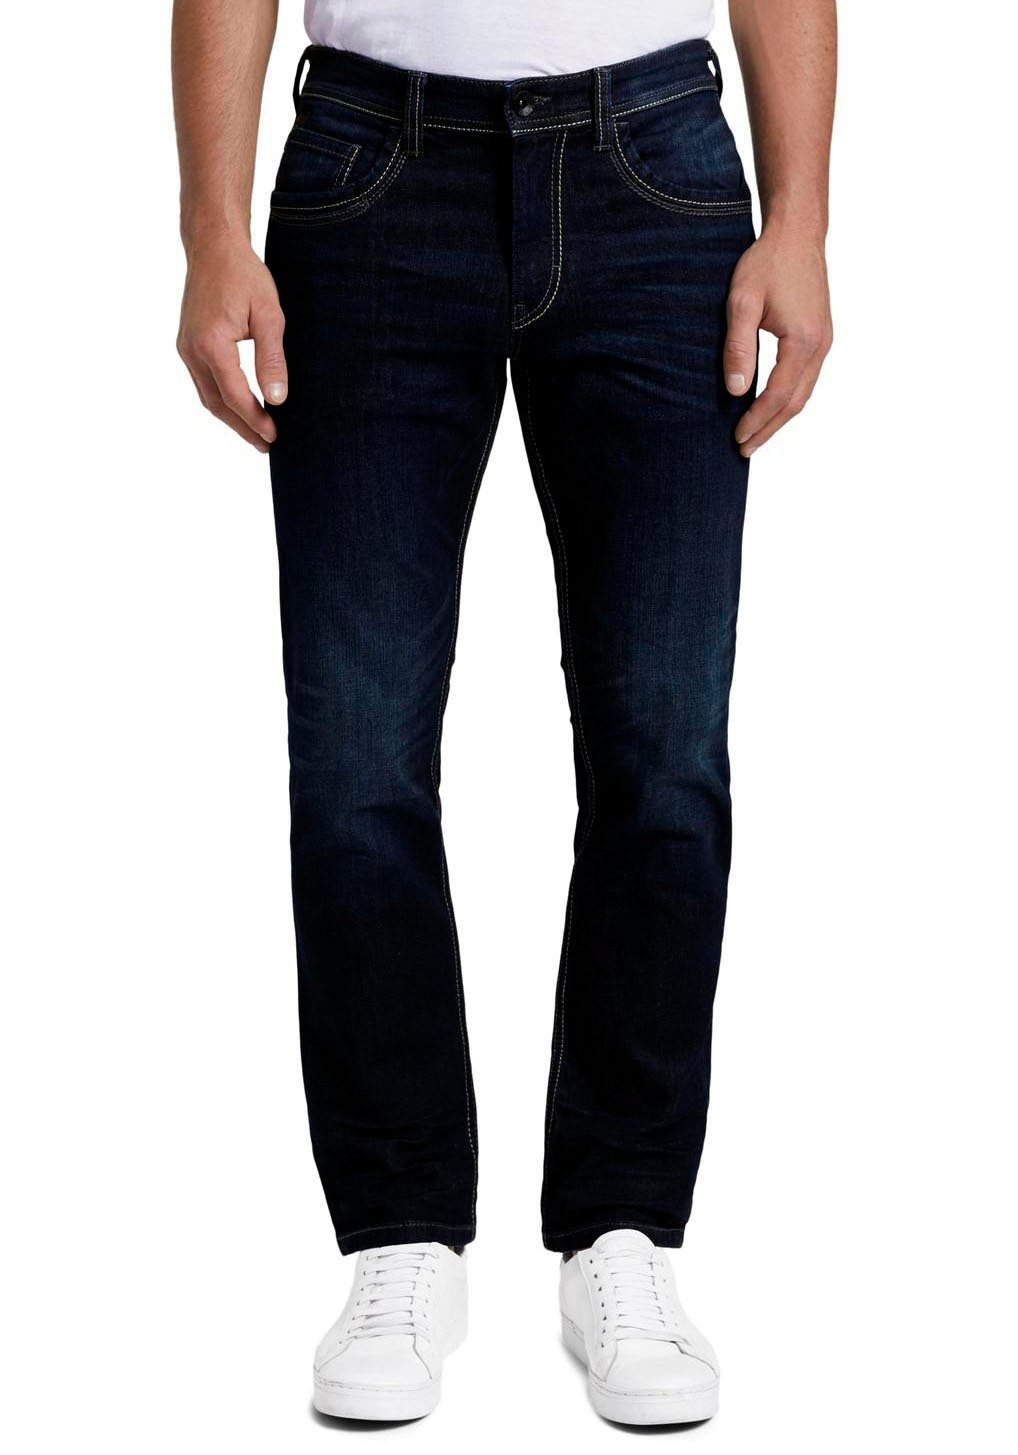 billig erwerben TOM TAILOR 5-Pocket-Jeans MARVIN wash Logo-Print mit Straight stone kleinem dark